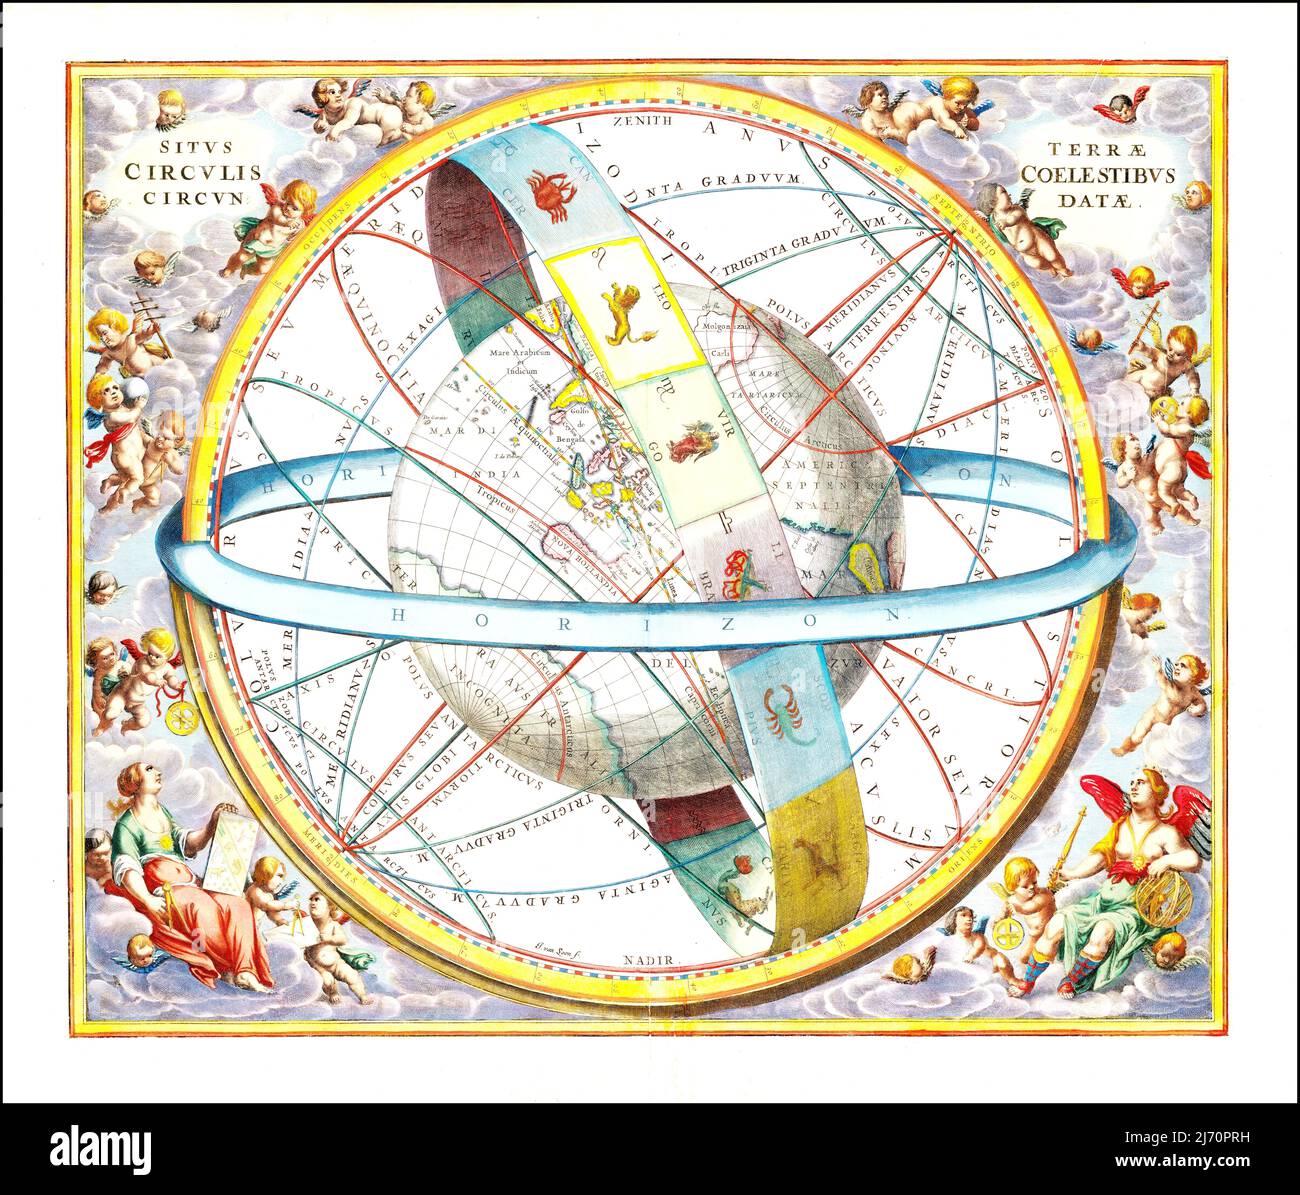 Andreas Cellarius - posizione della Terra circondata dai circoli celesti - 1660 Foto Stock